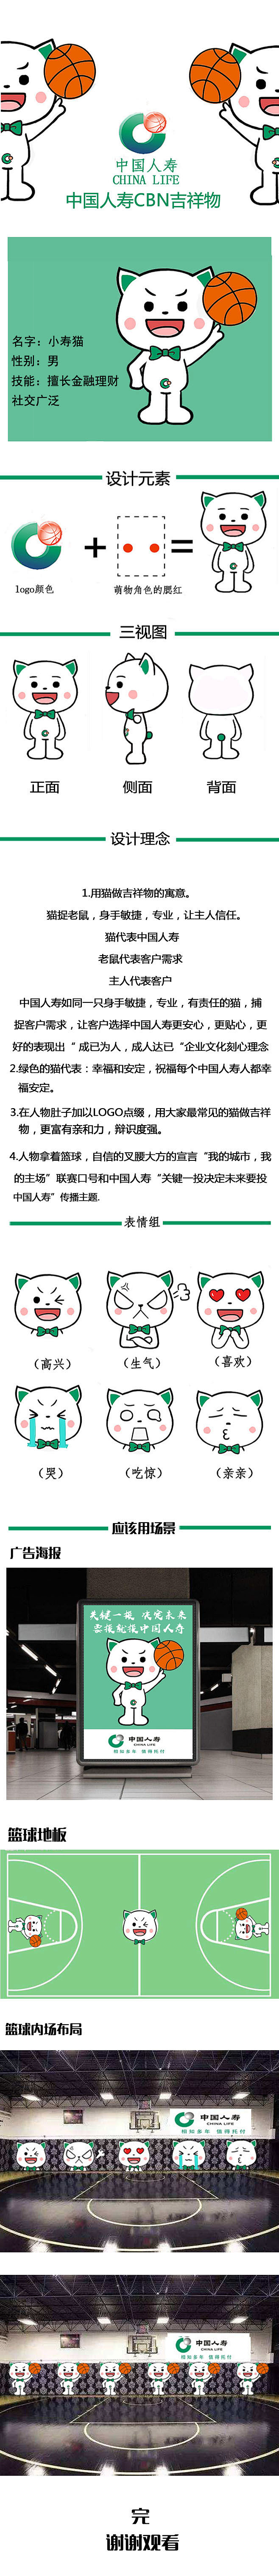 中国人寿CBN吉祥物设计——小寿猫